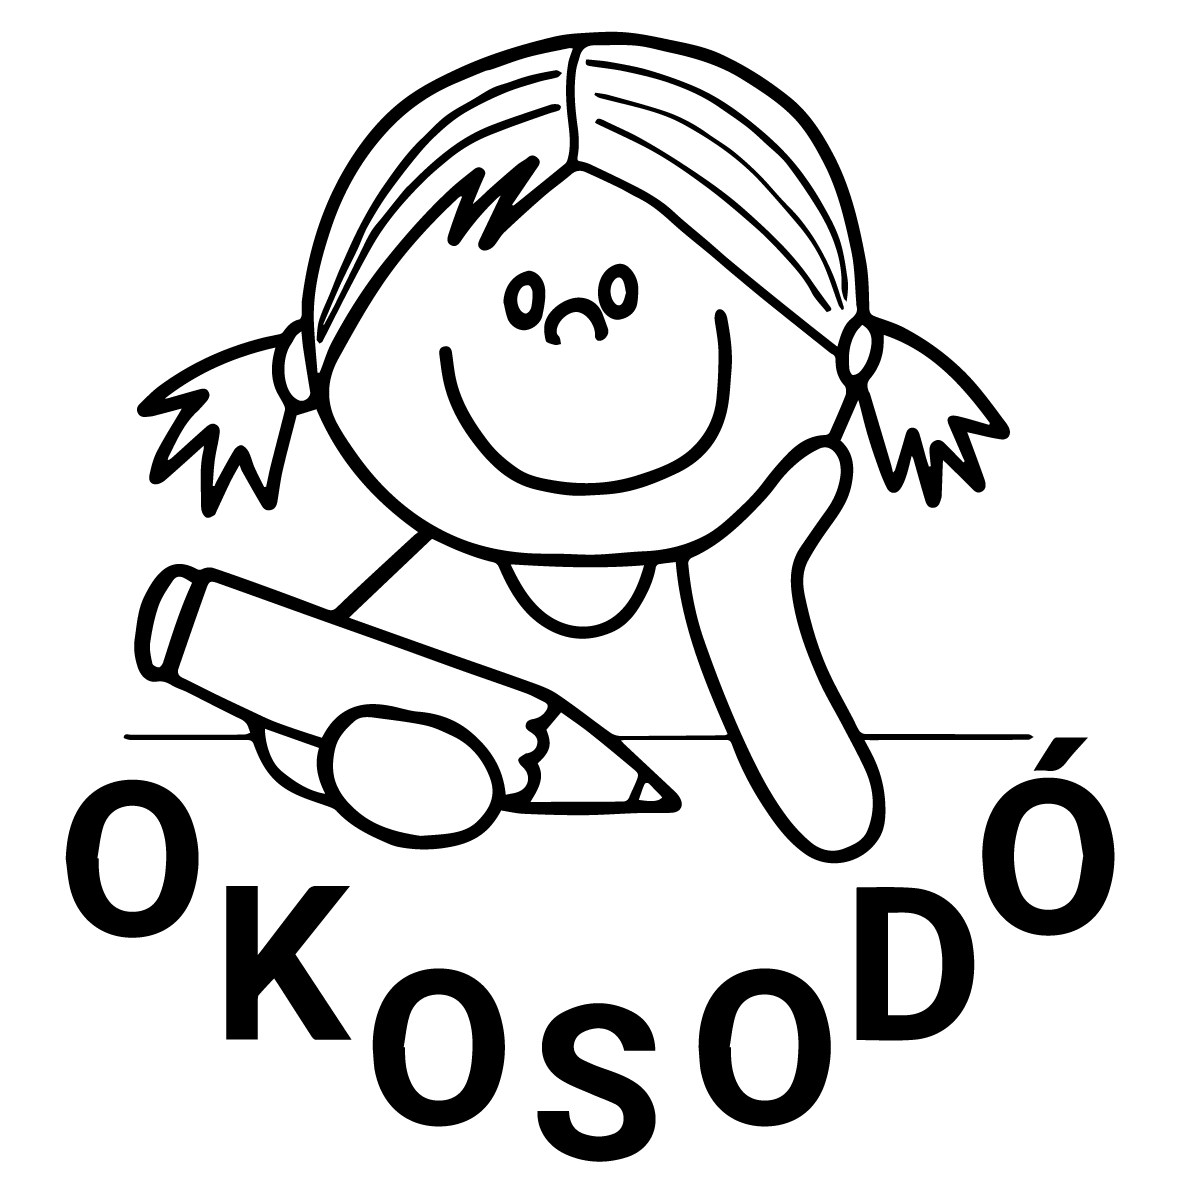 okosodo5x5 01